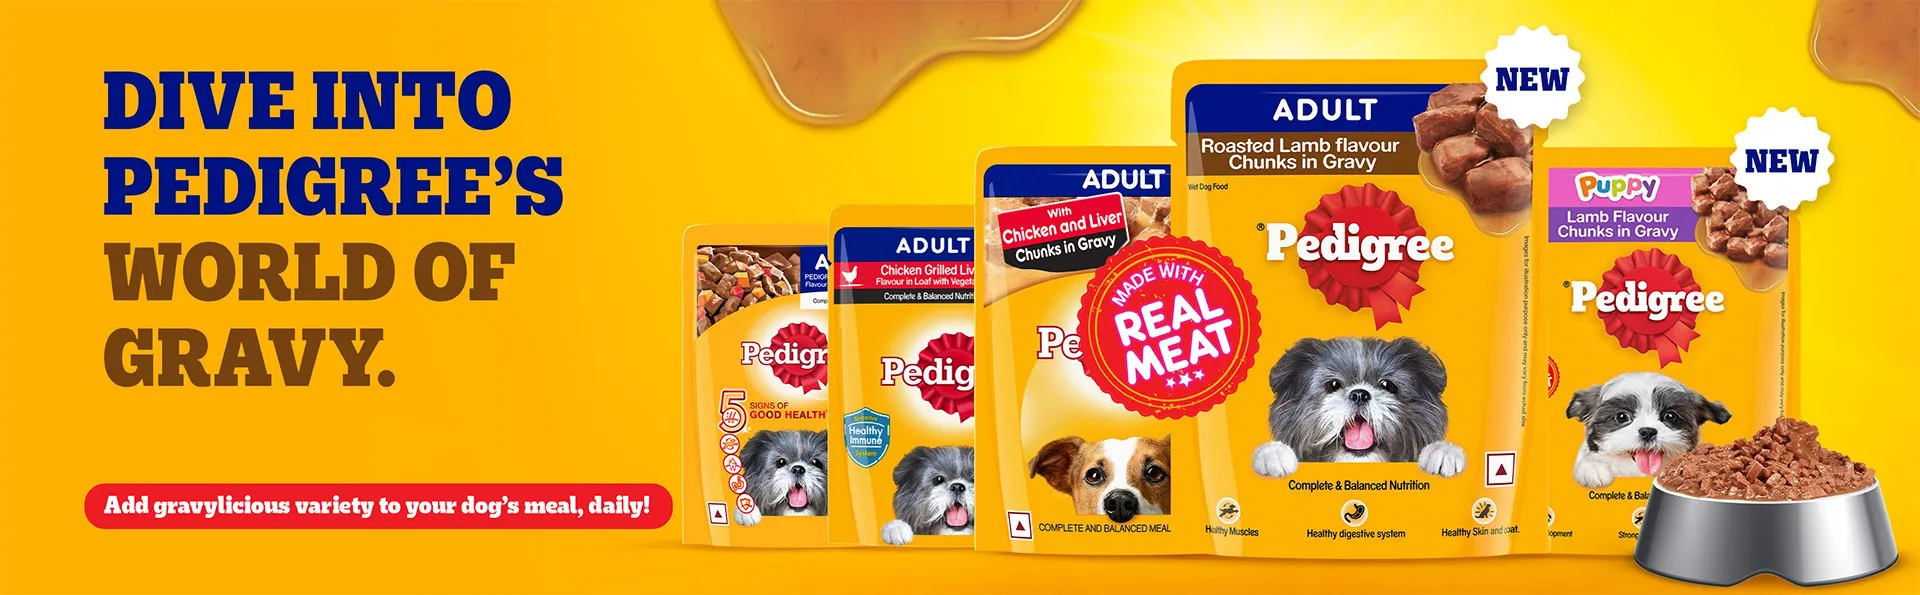 dog-food-banner